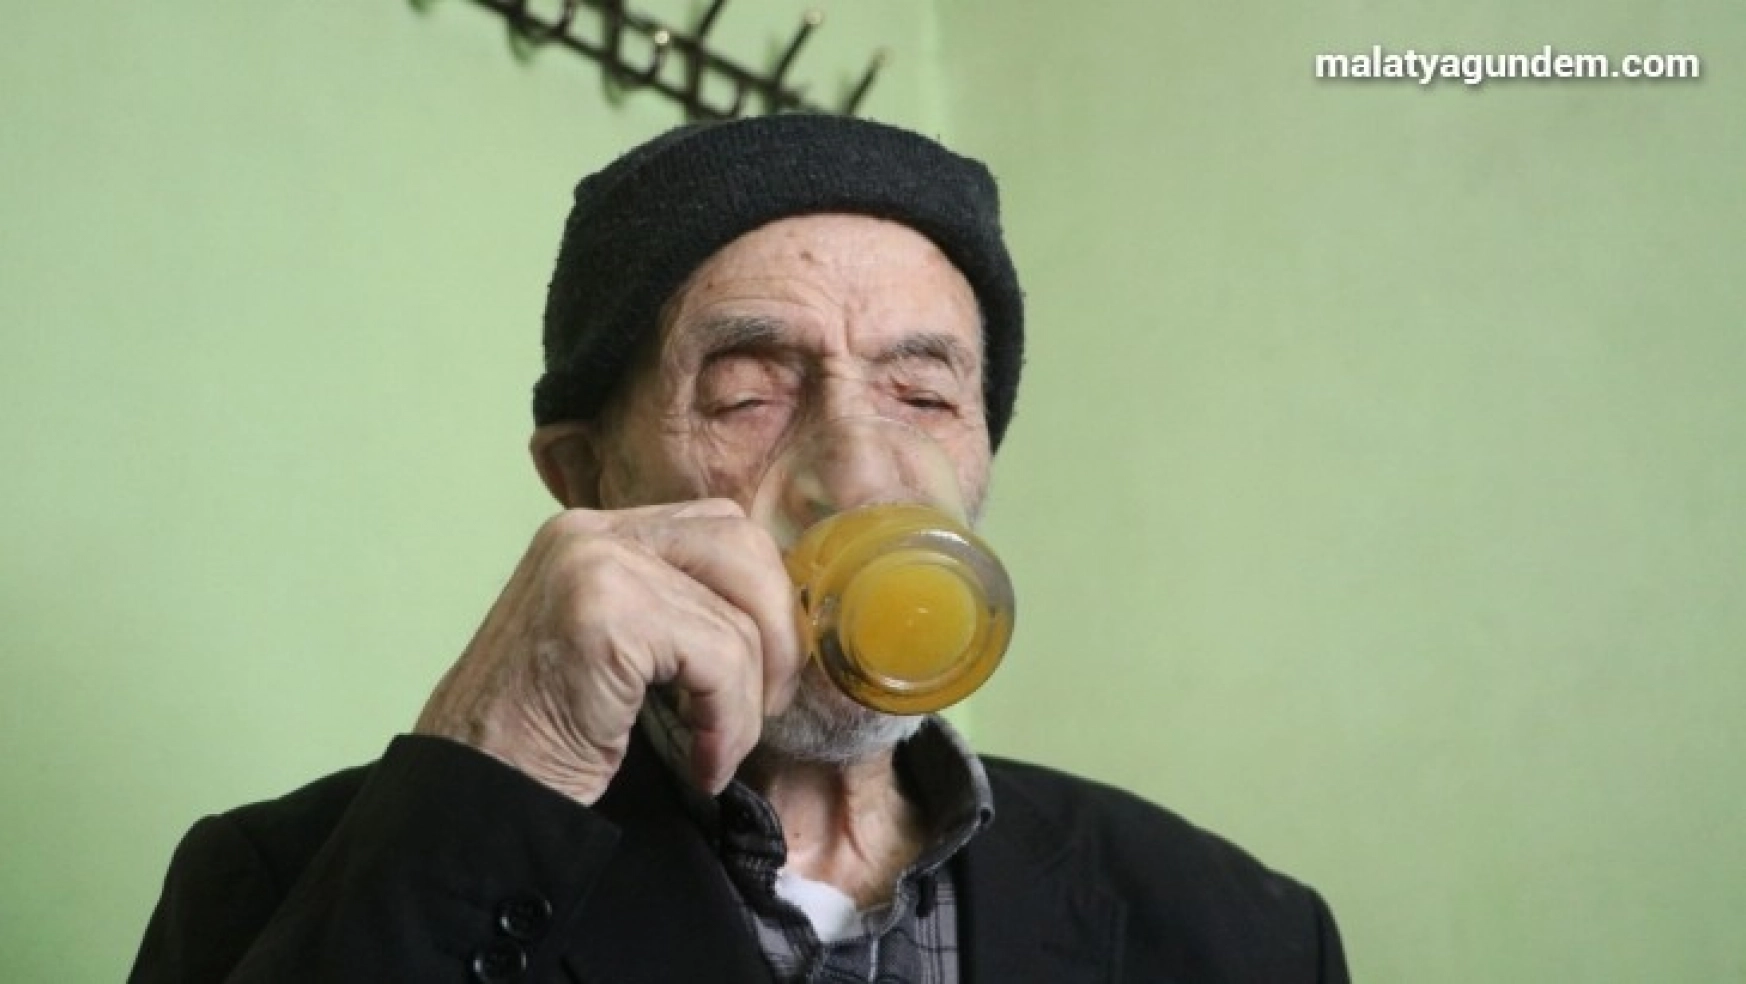 Covid-19'a yakalanmayan 110 yaşındaki Mahmut dede, günde 2 litre kola içiyor